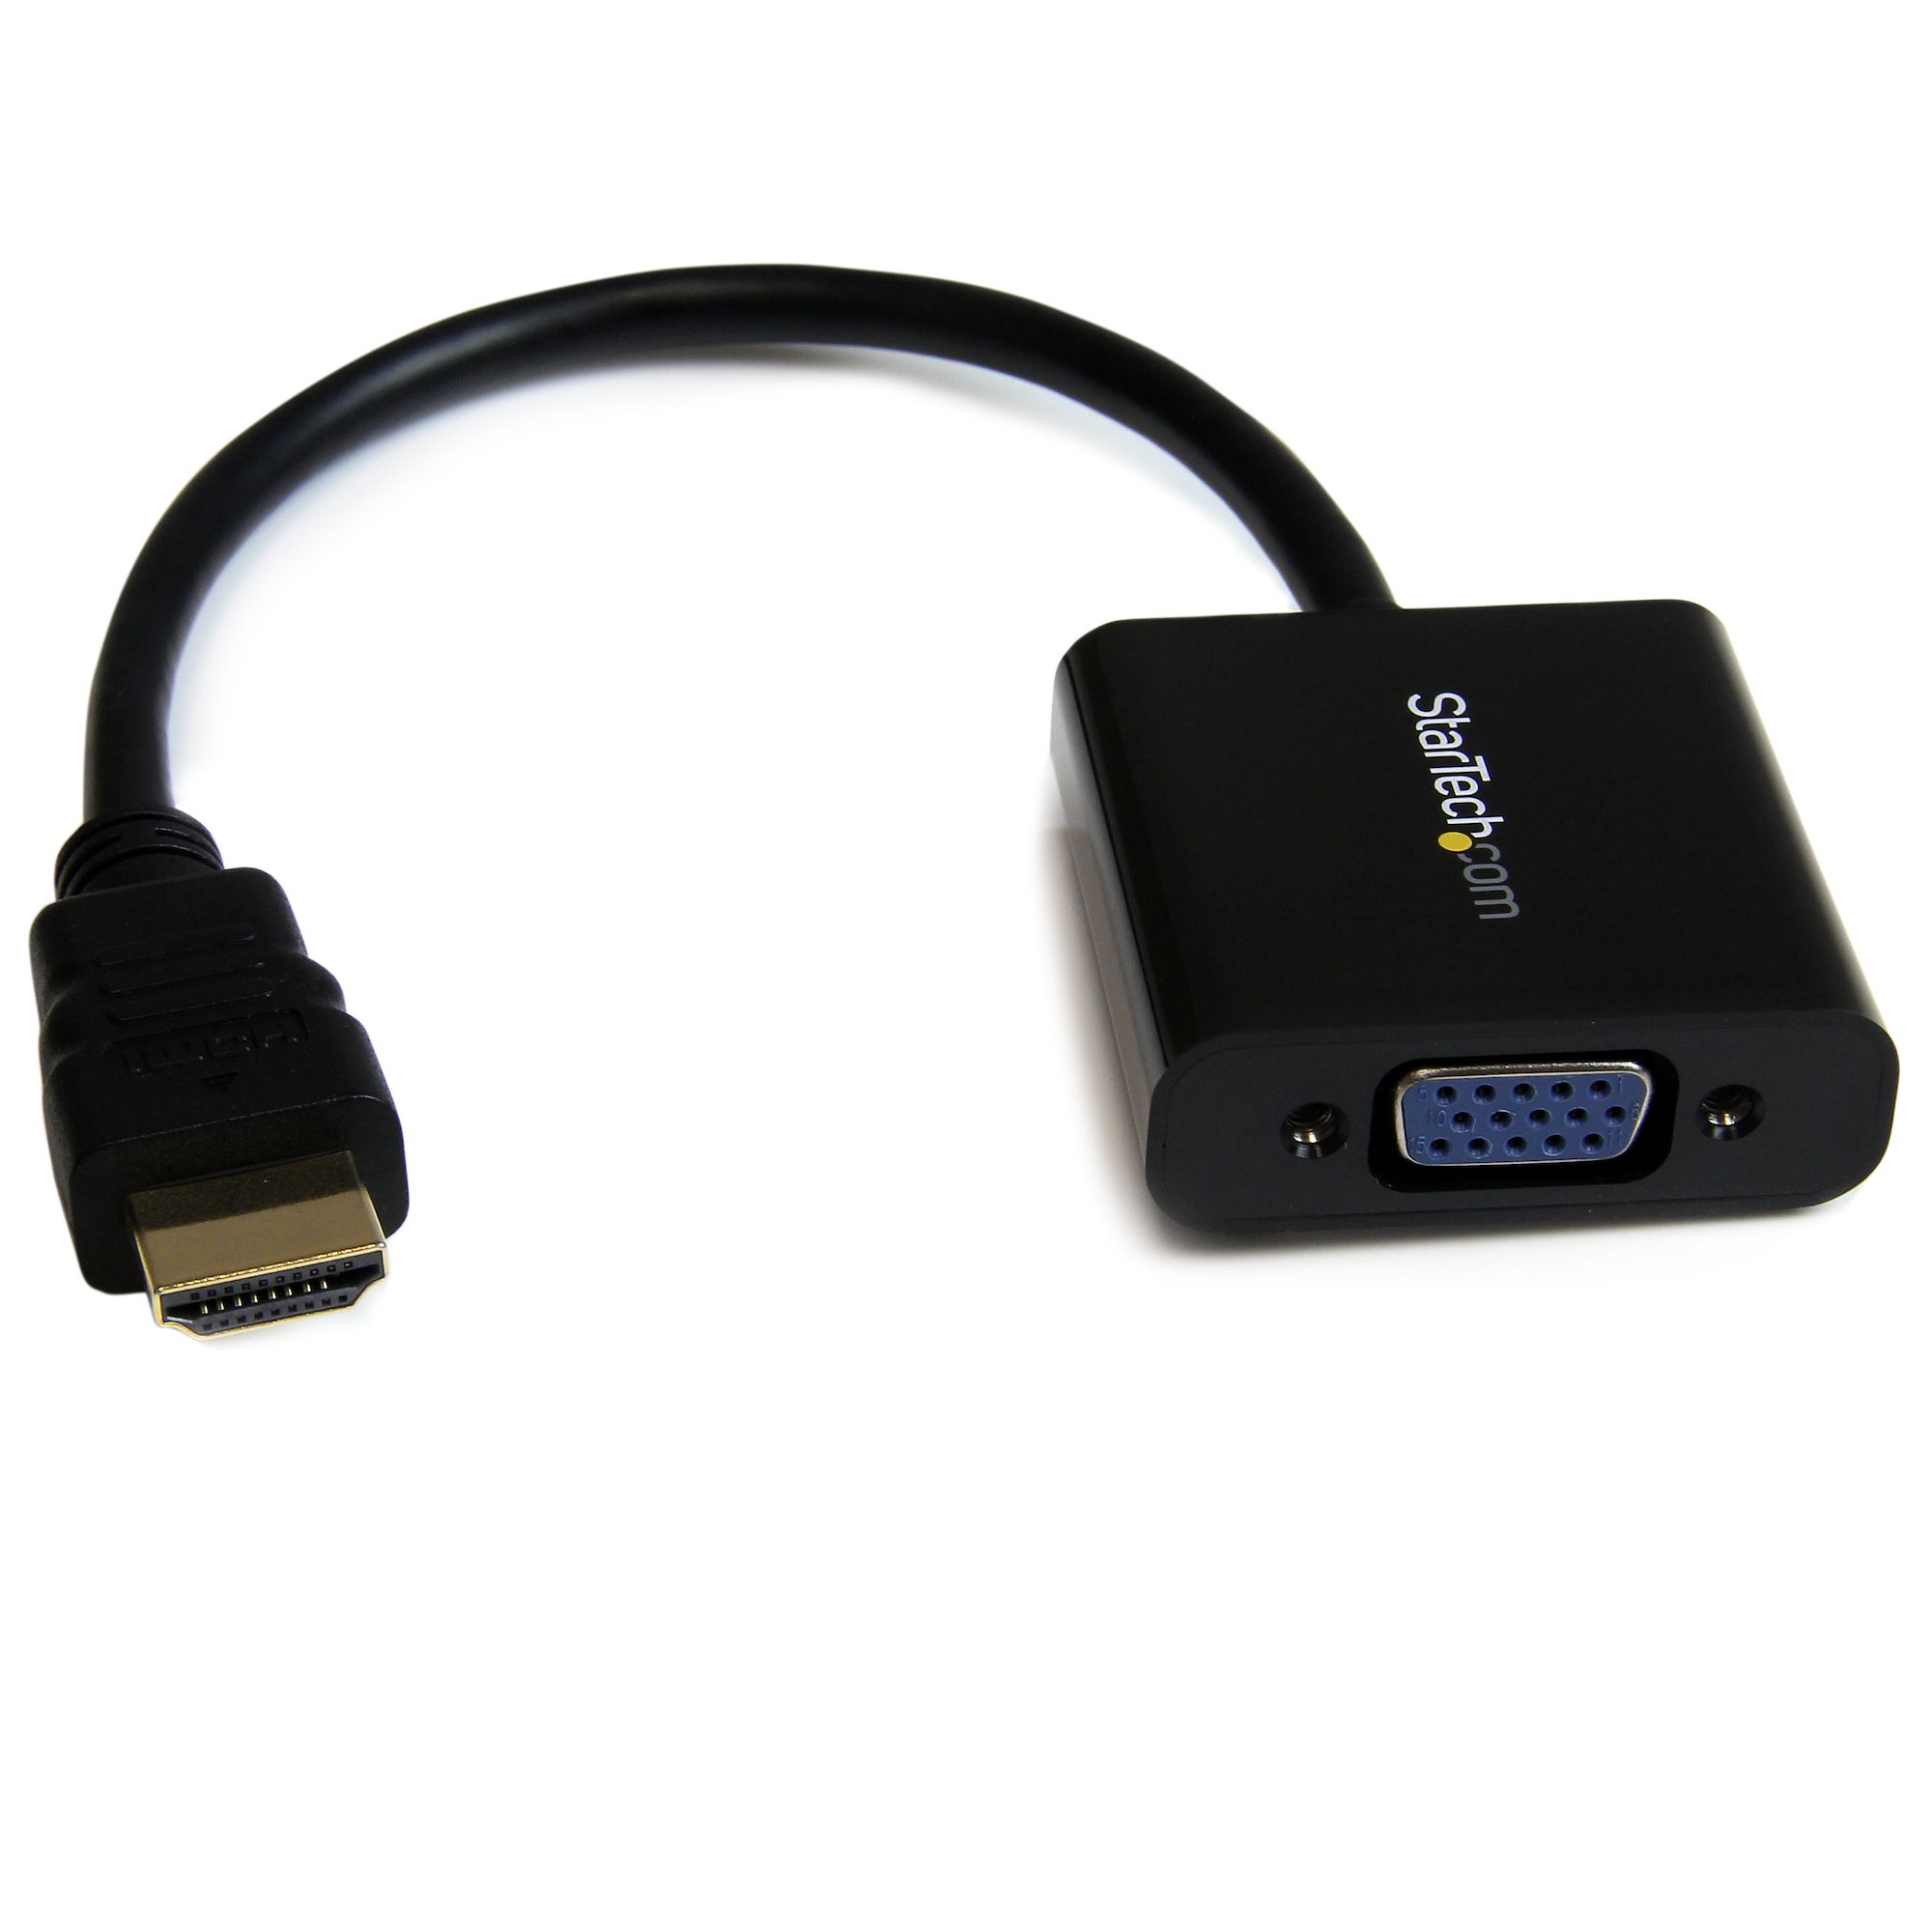 HDMI to Adapter Converter 1920x1080 - Video Converters | StarTech.com Belgium